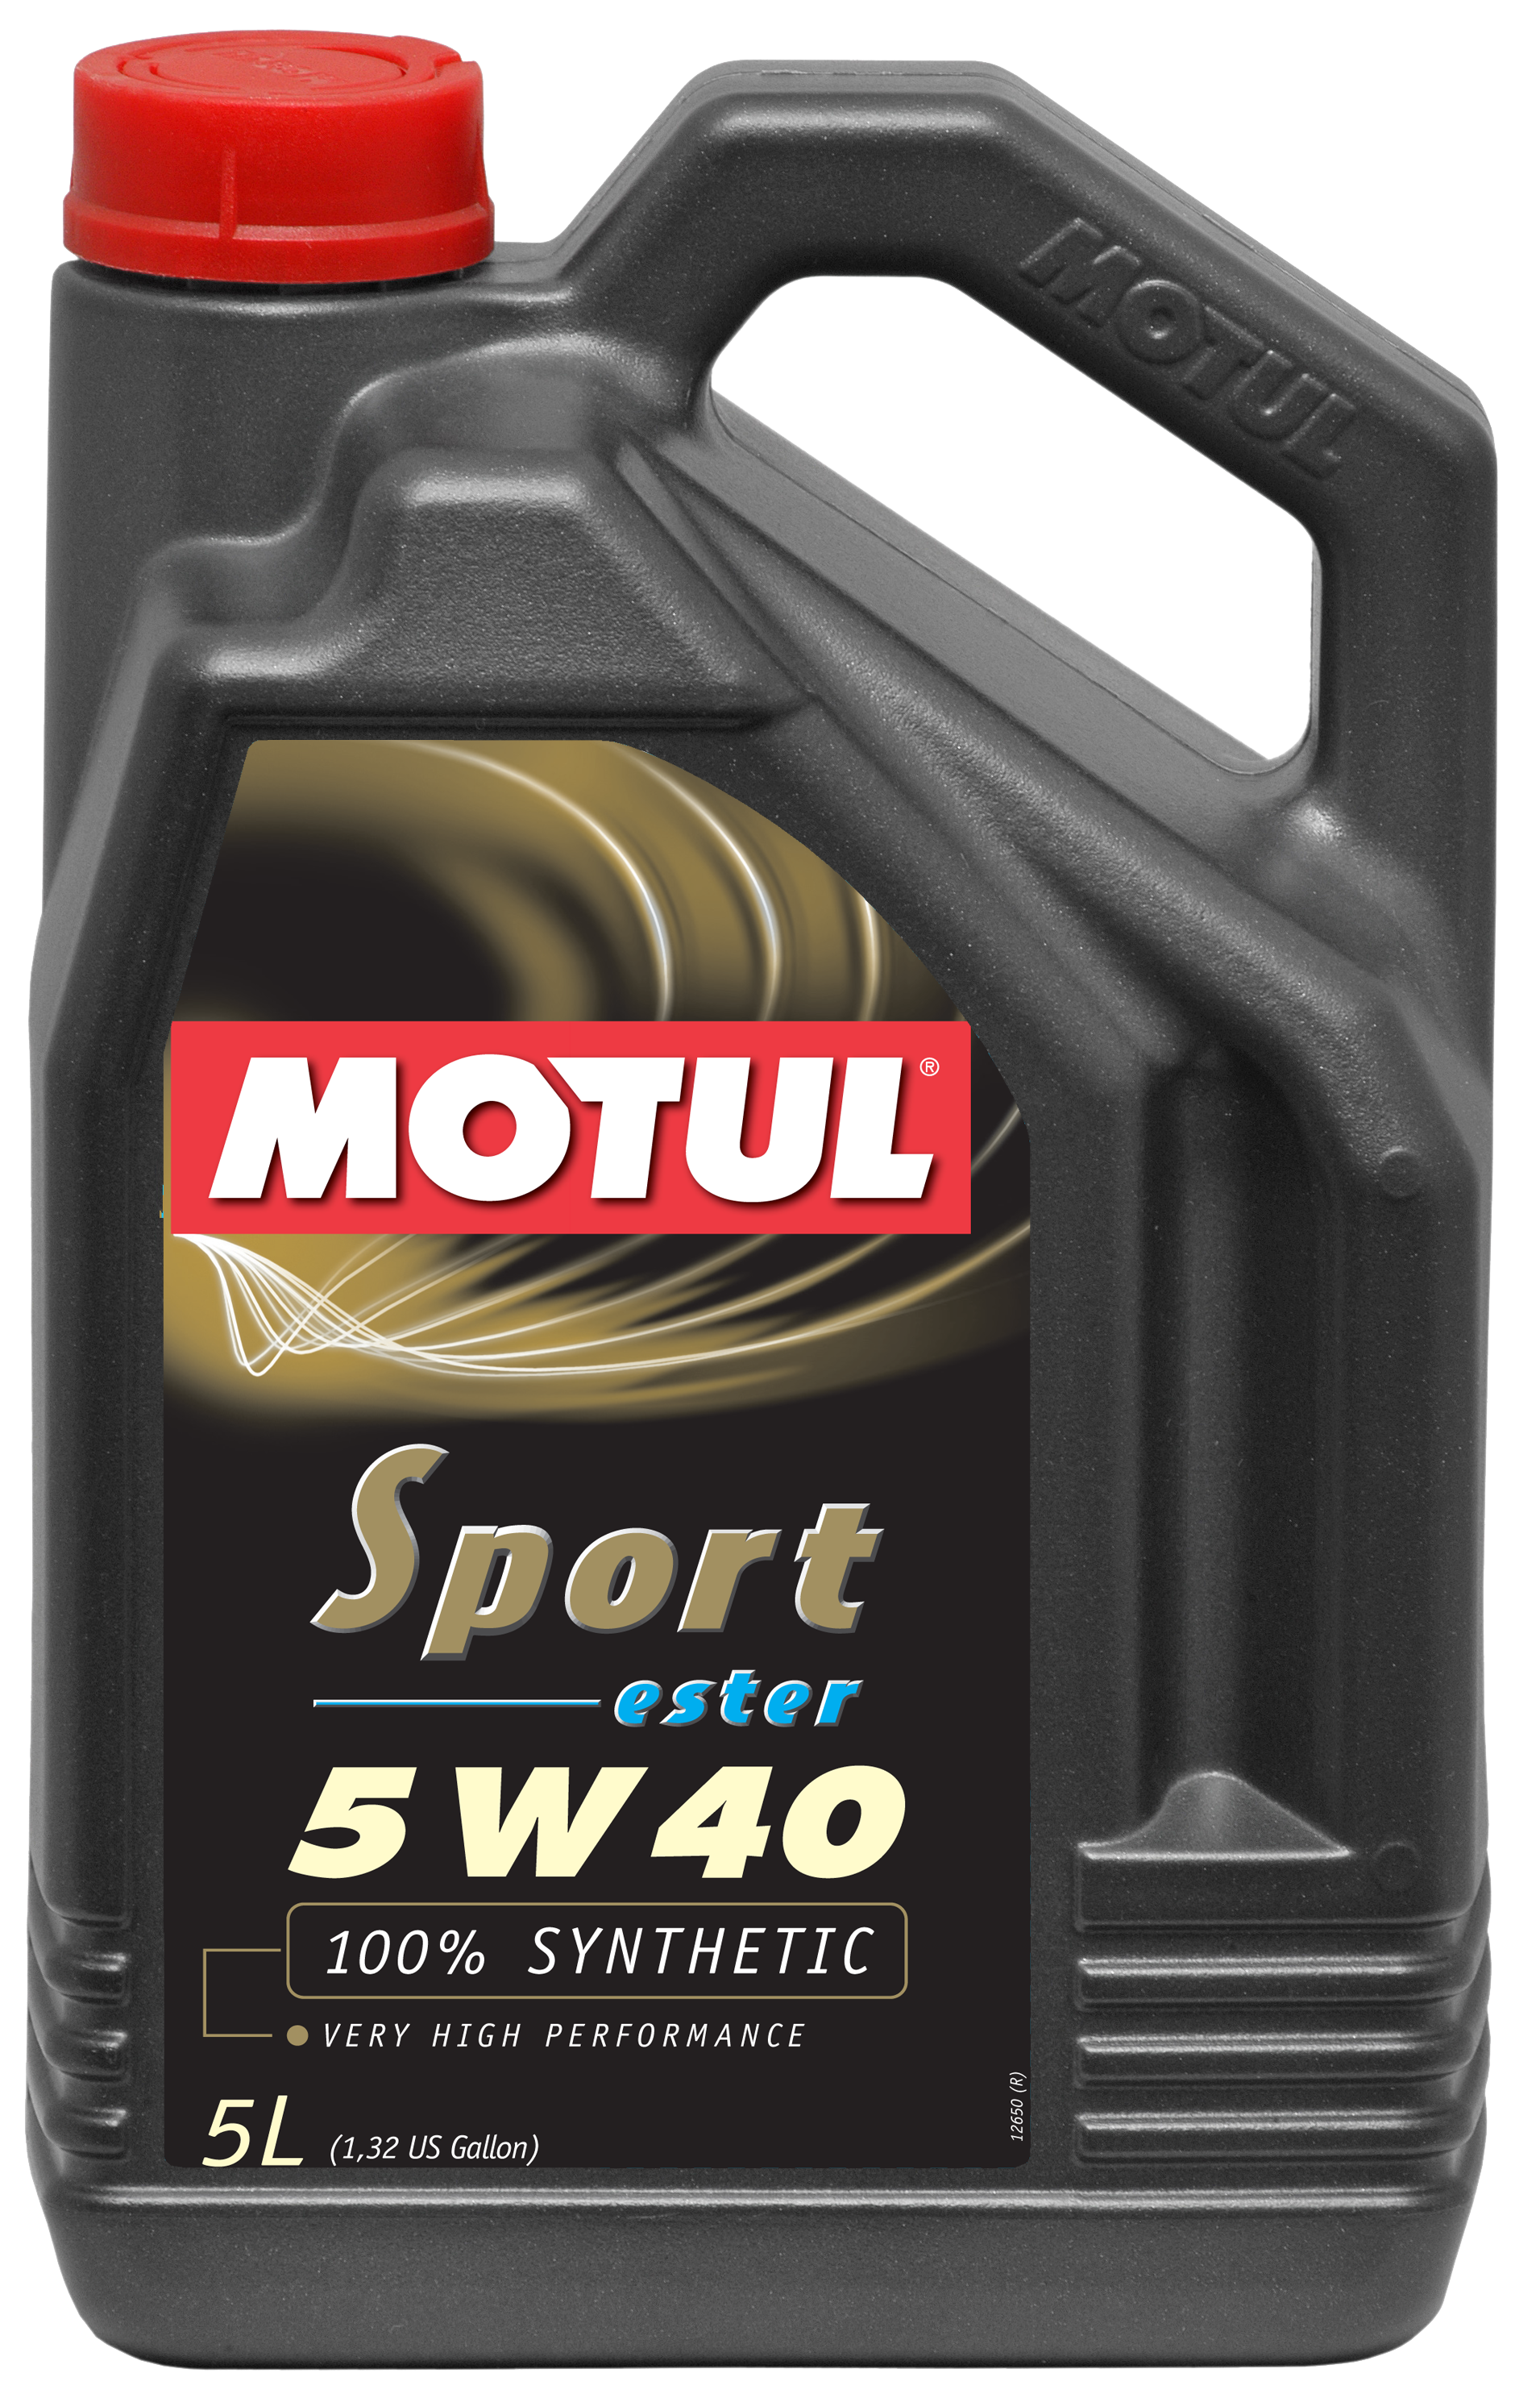 MOTUL SPORT 5W40 - 5L - Synthetic Engine Oil